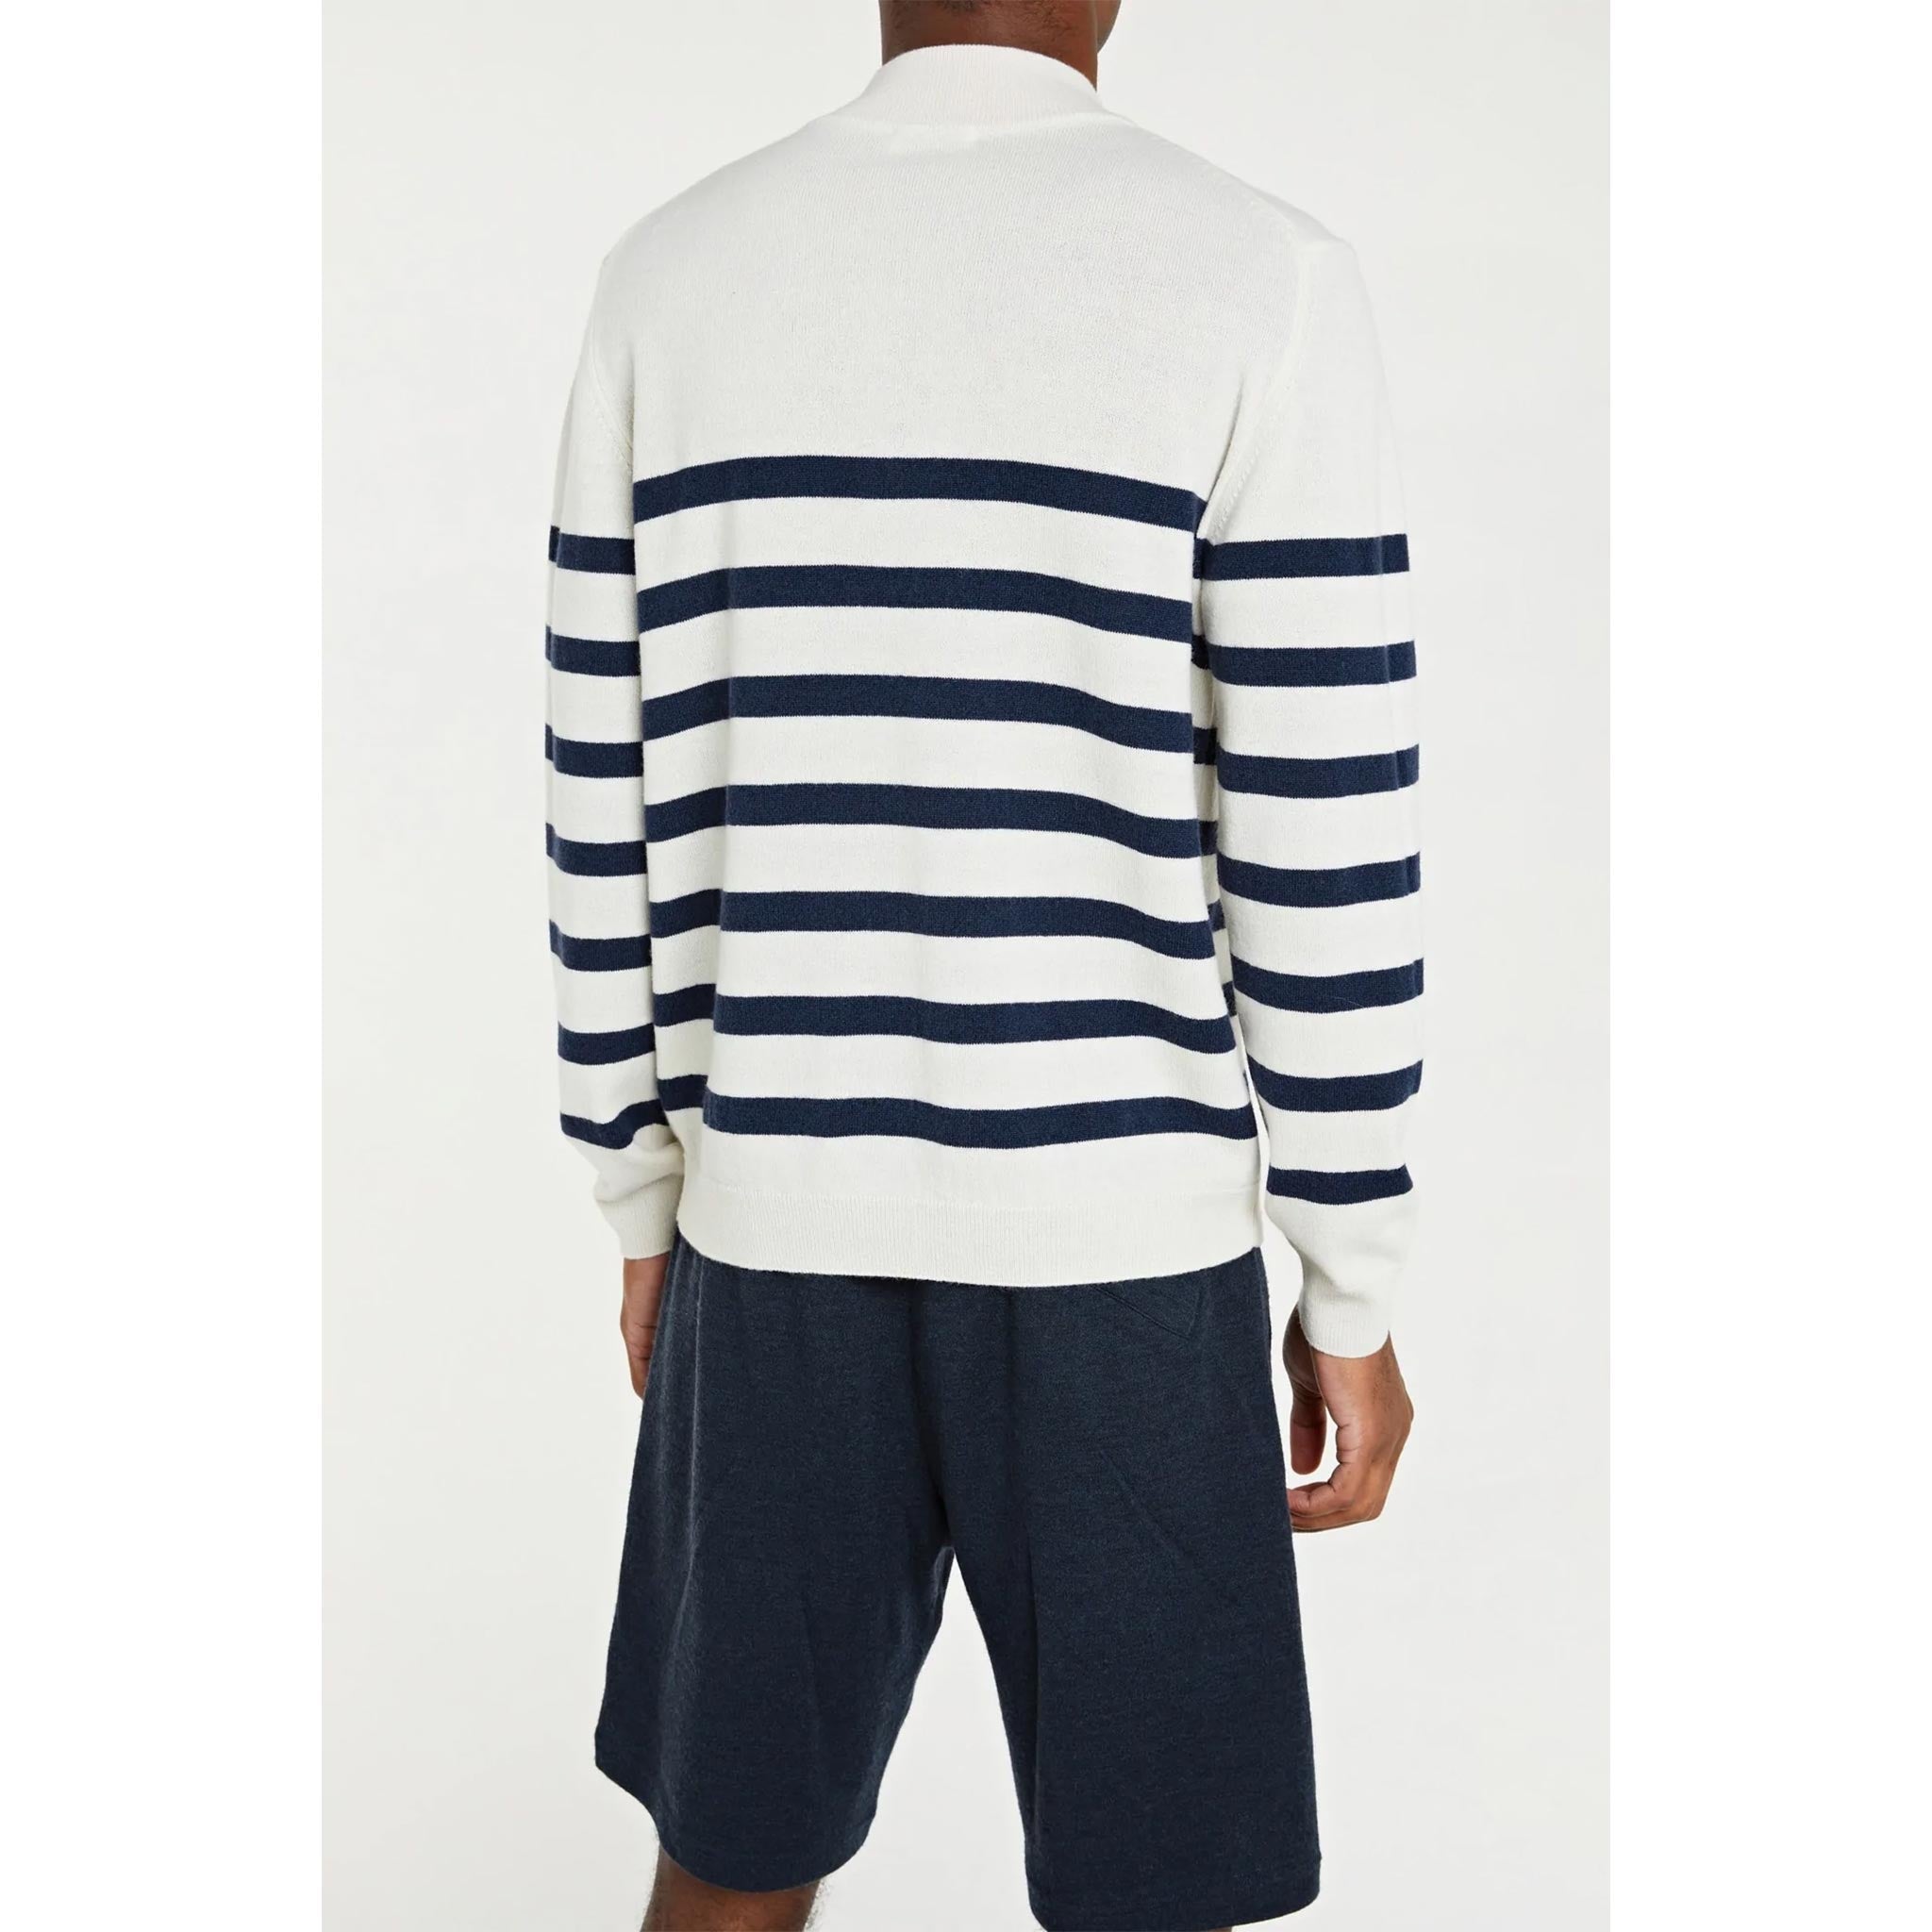 Gullholmen Zip-Up Sweater in White/Navy Stripes